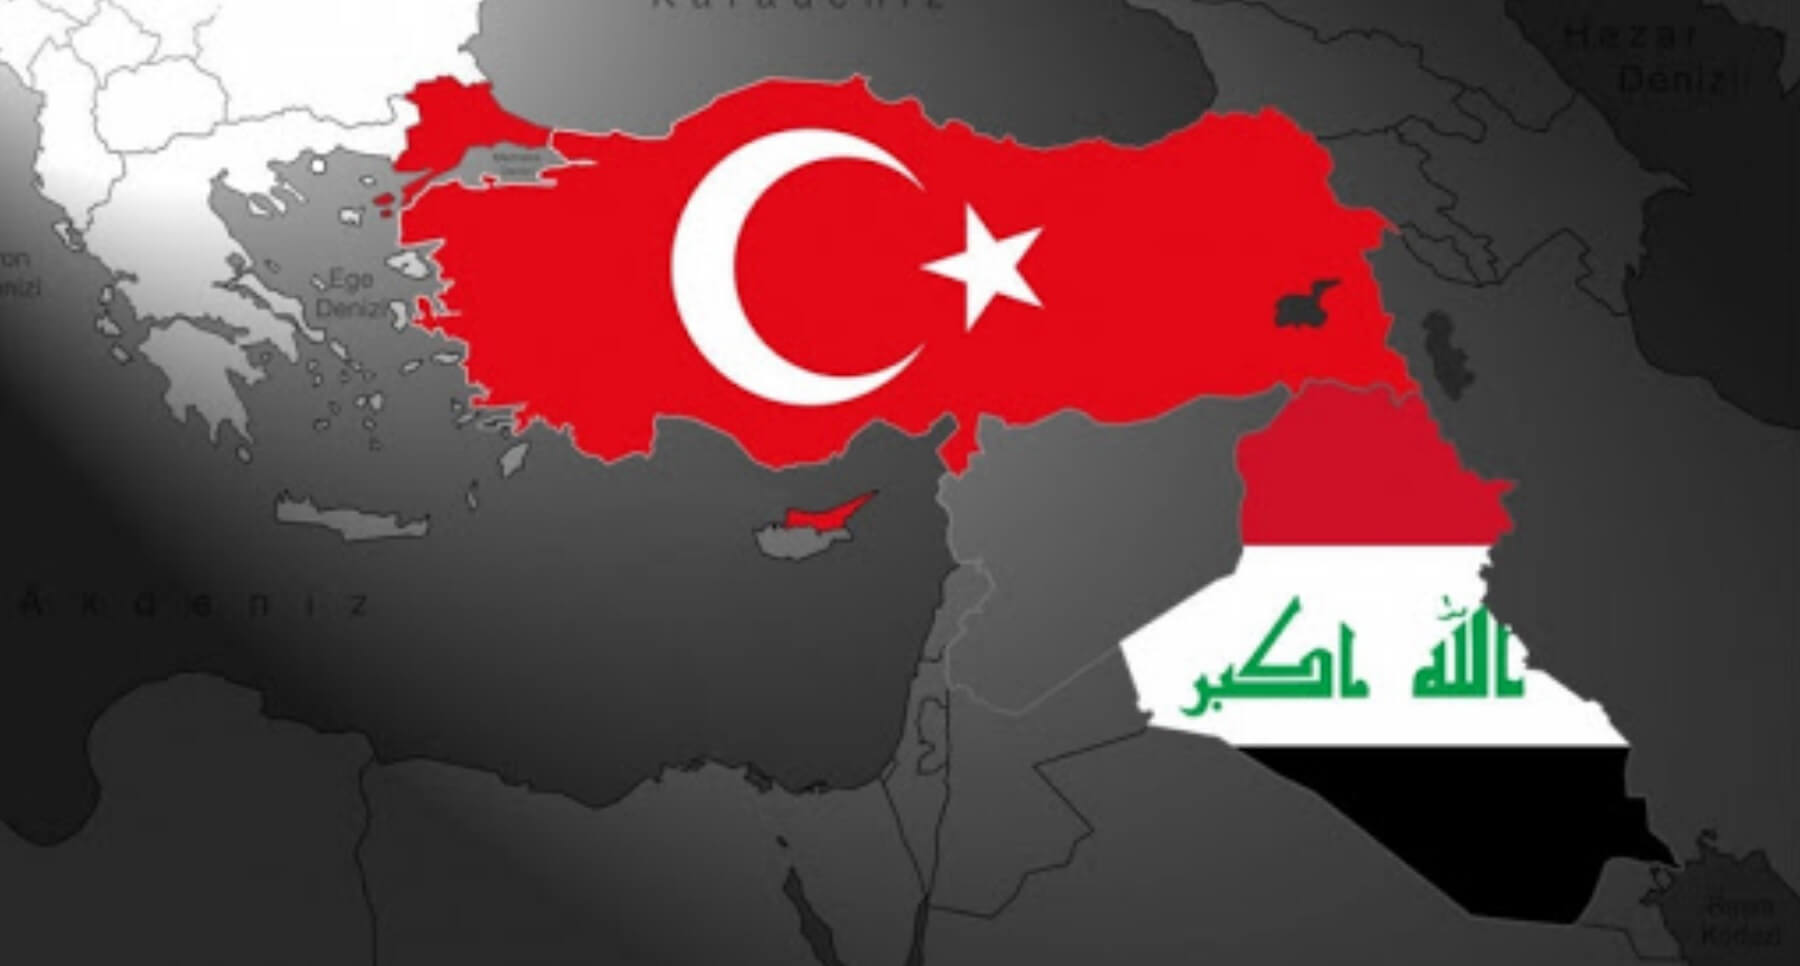 Tirkiye û Iraqê li ser diravên bazirganîyê li hev kir